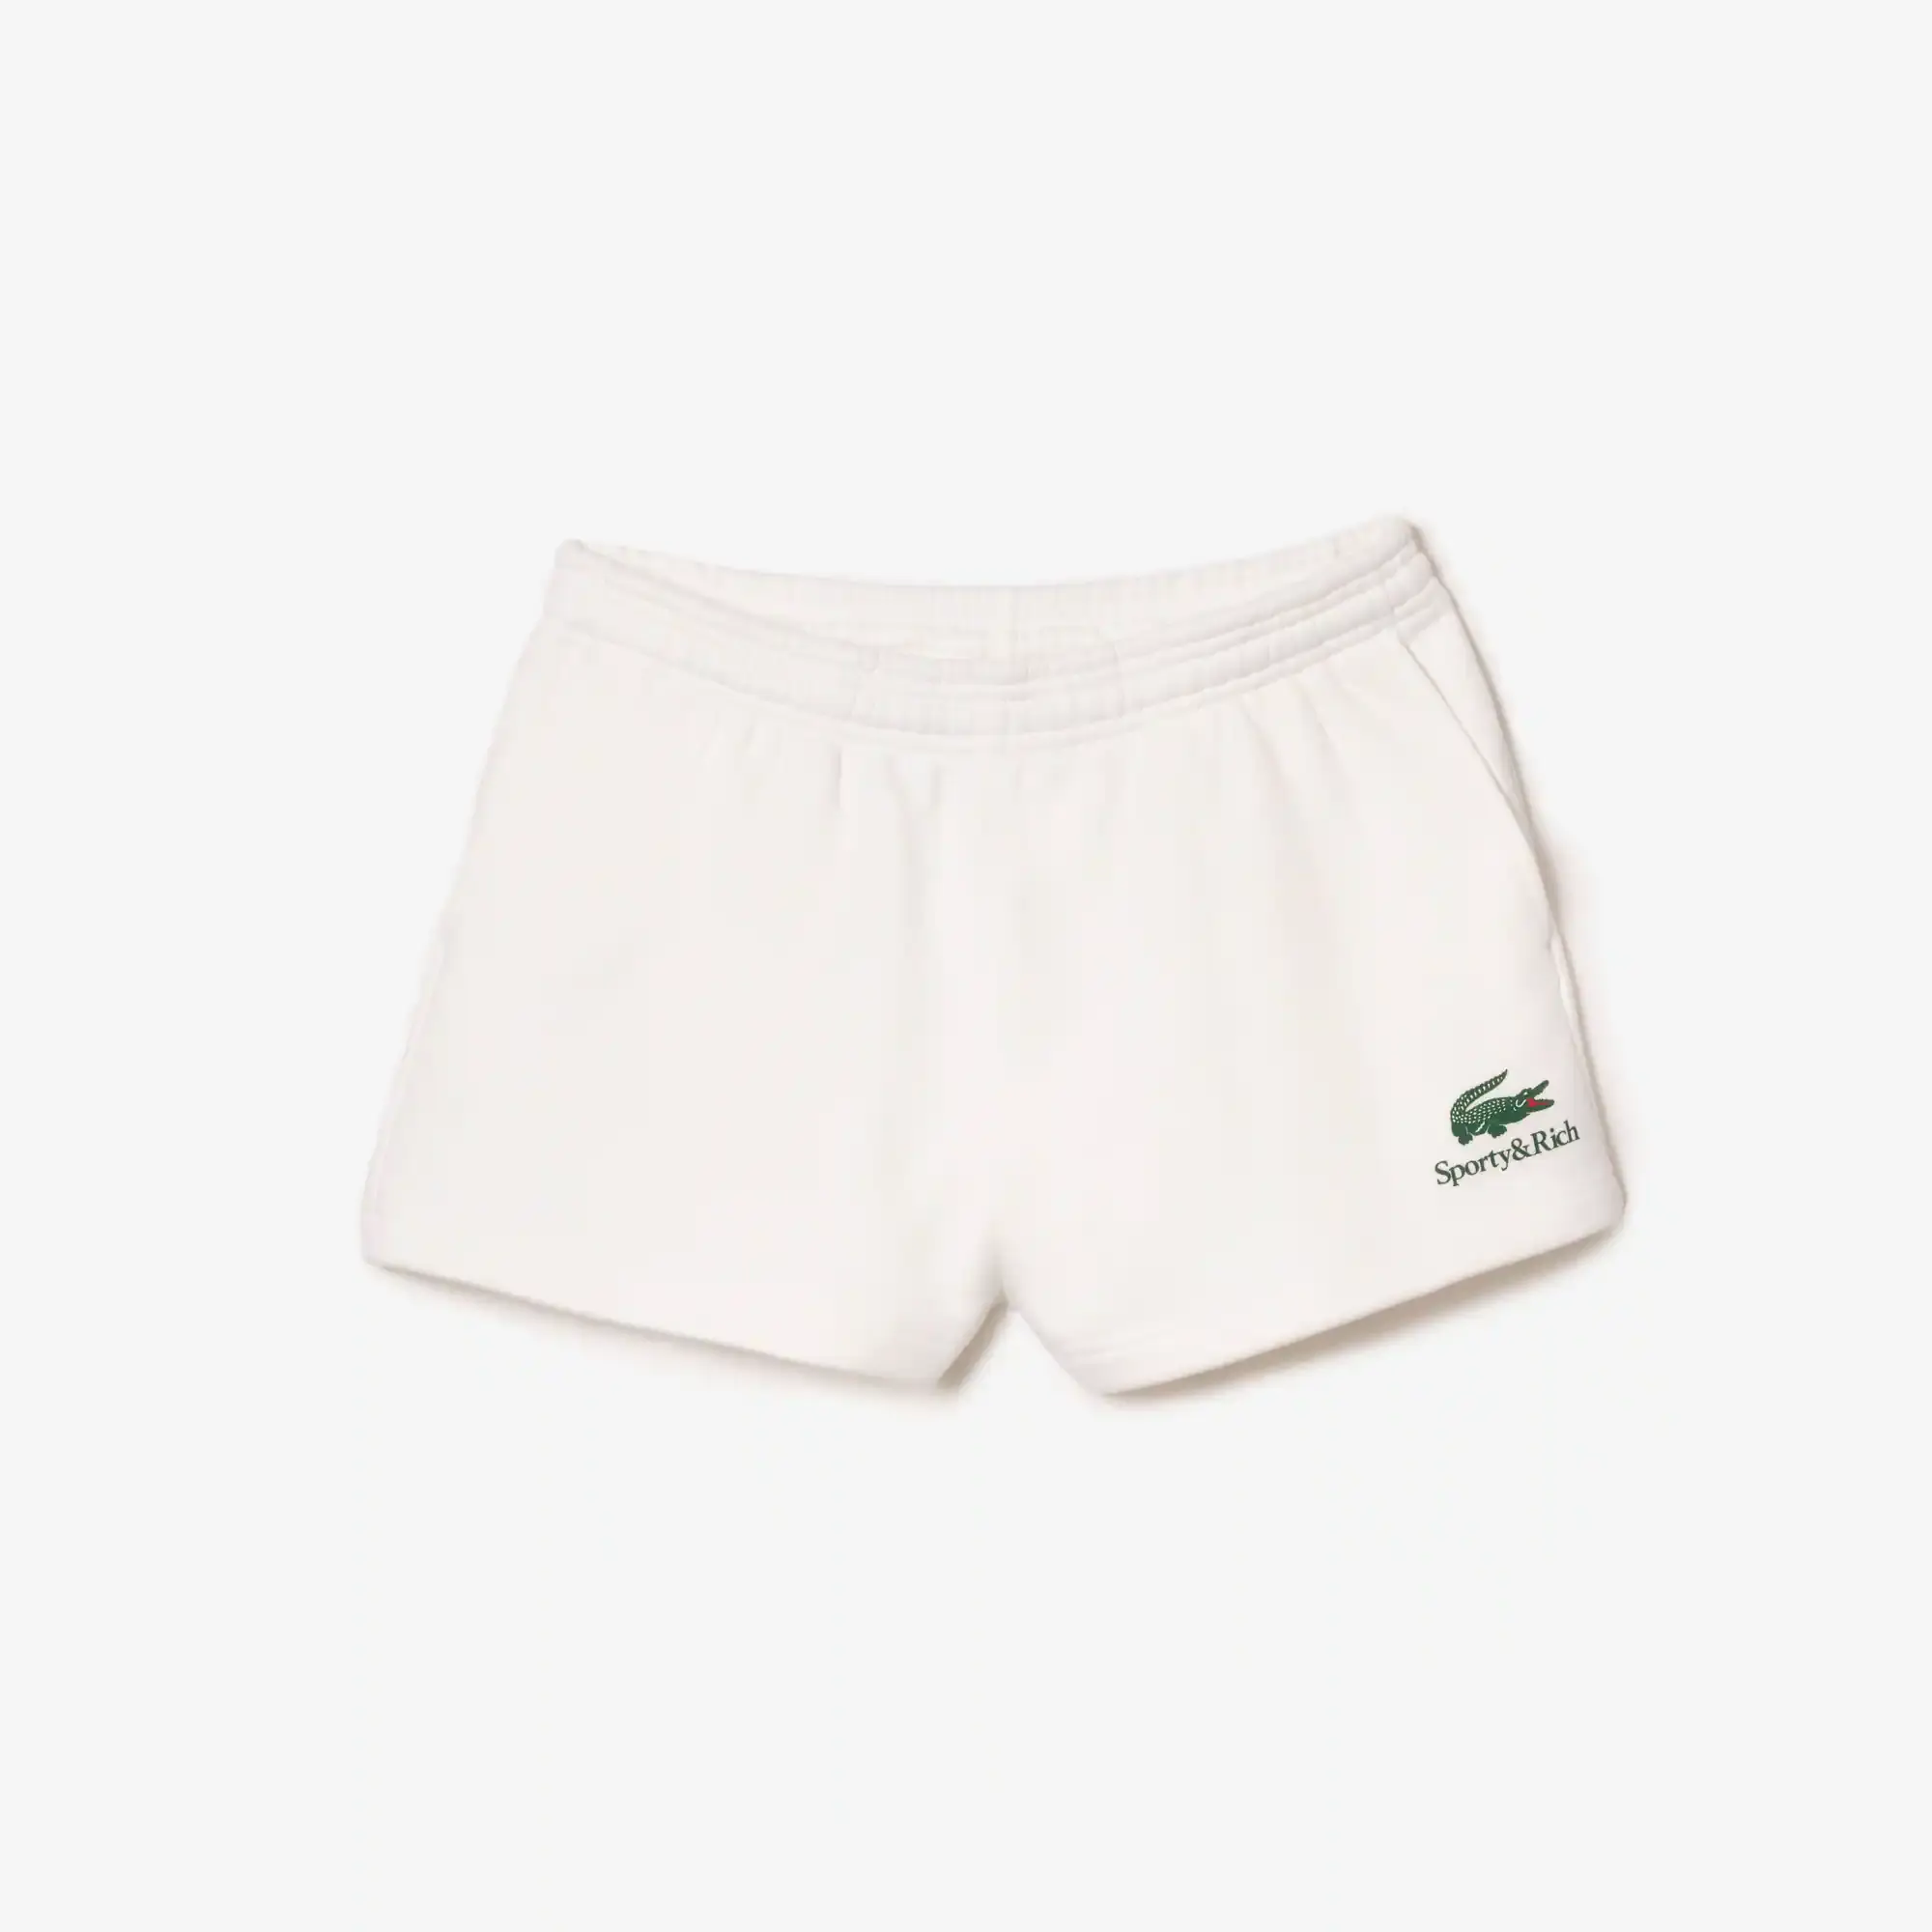 Lacoste x Sporty & Rich Fleece Shorts. 2